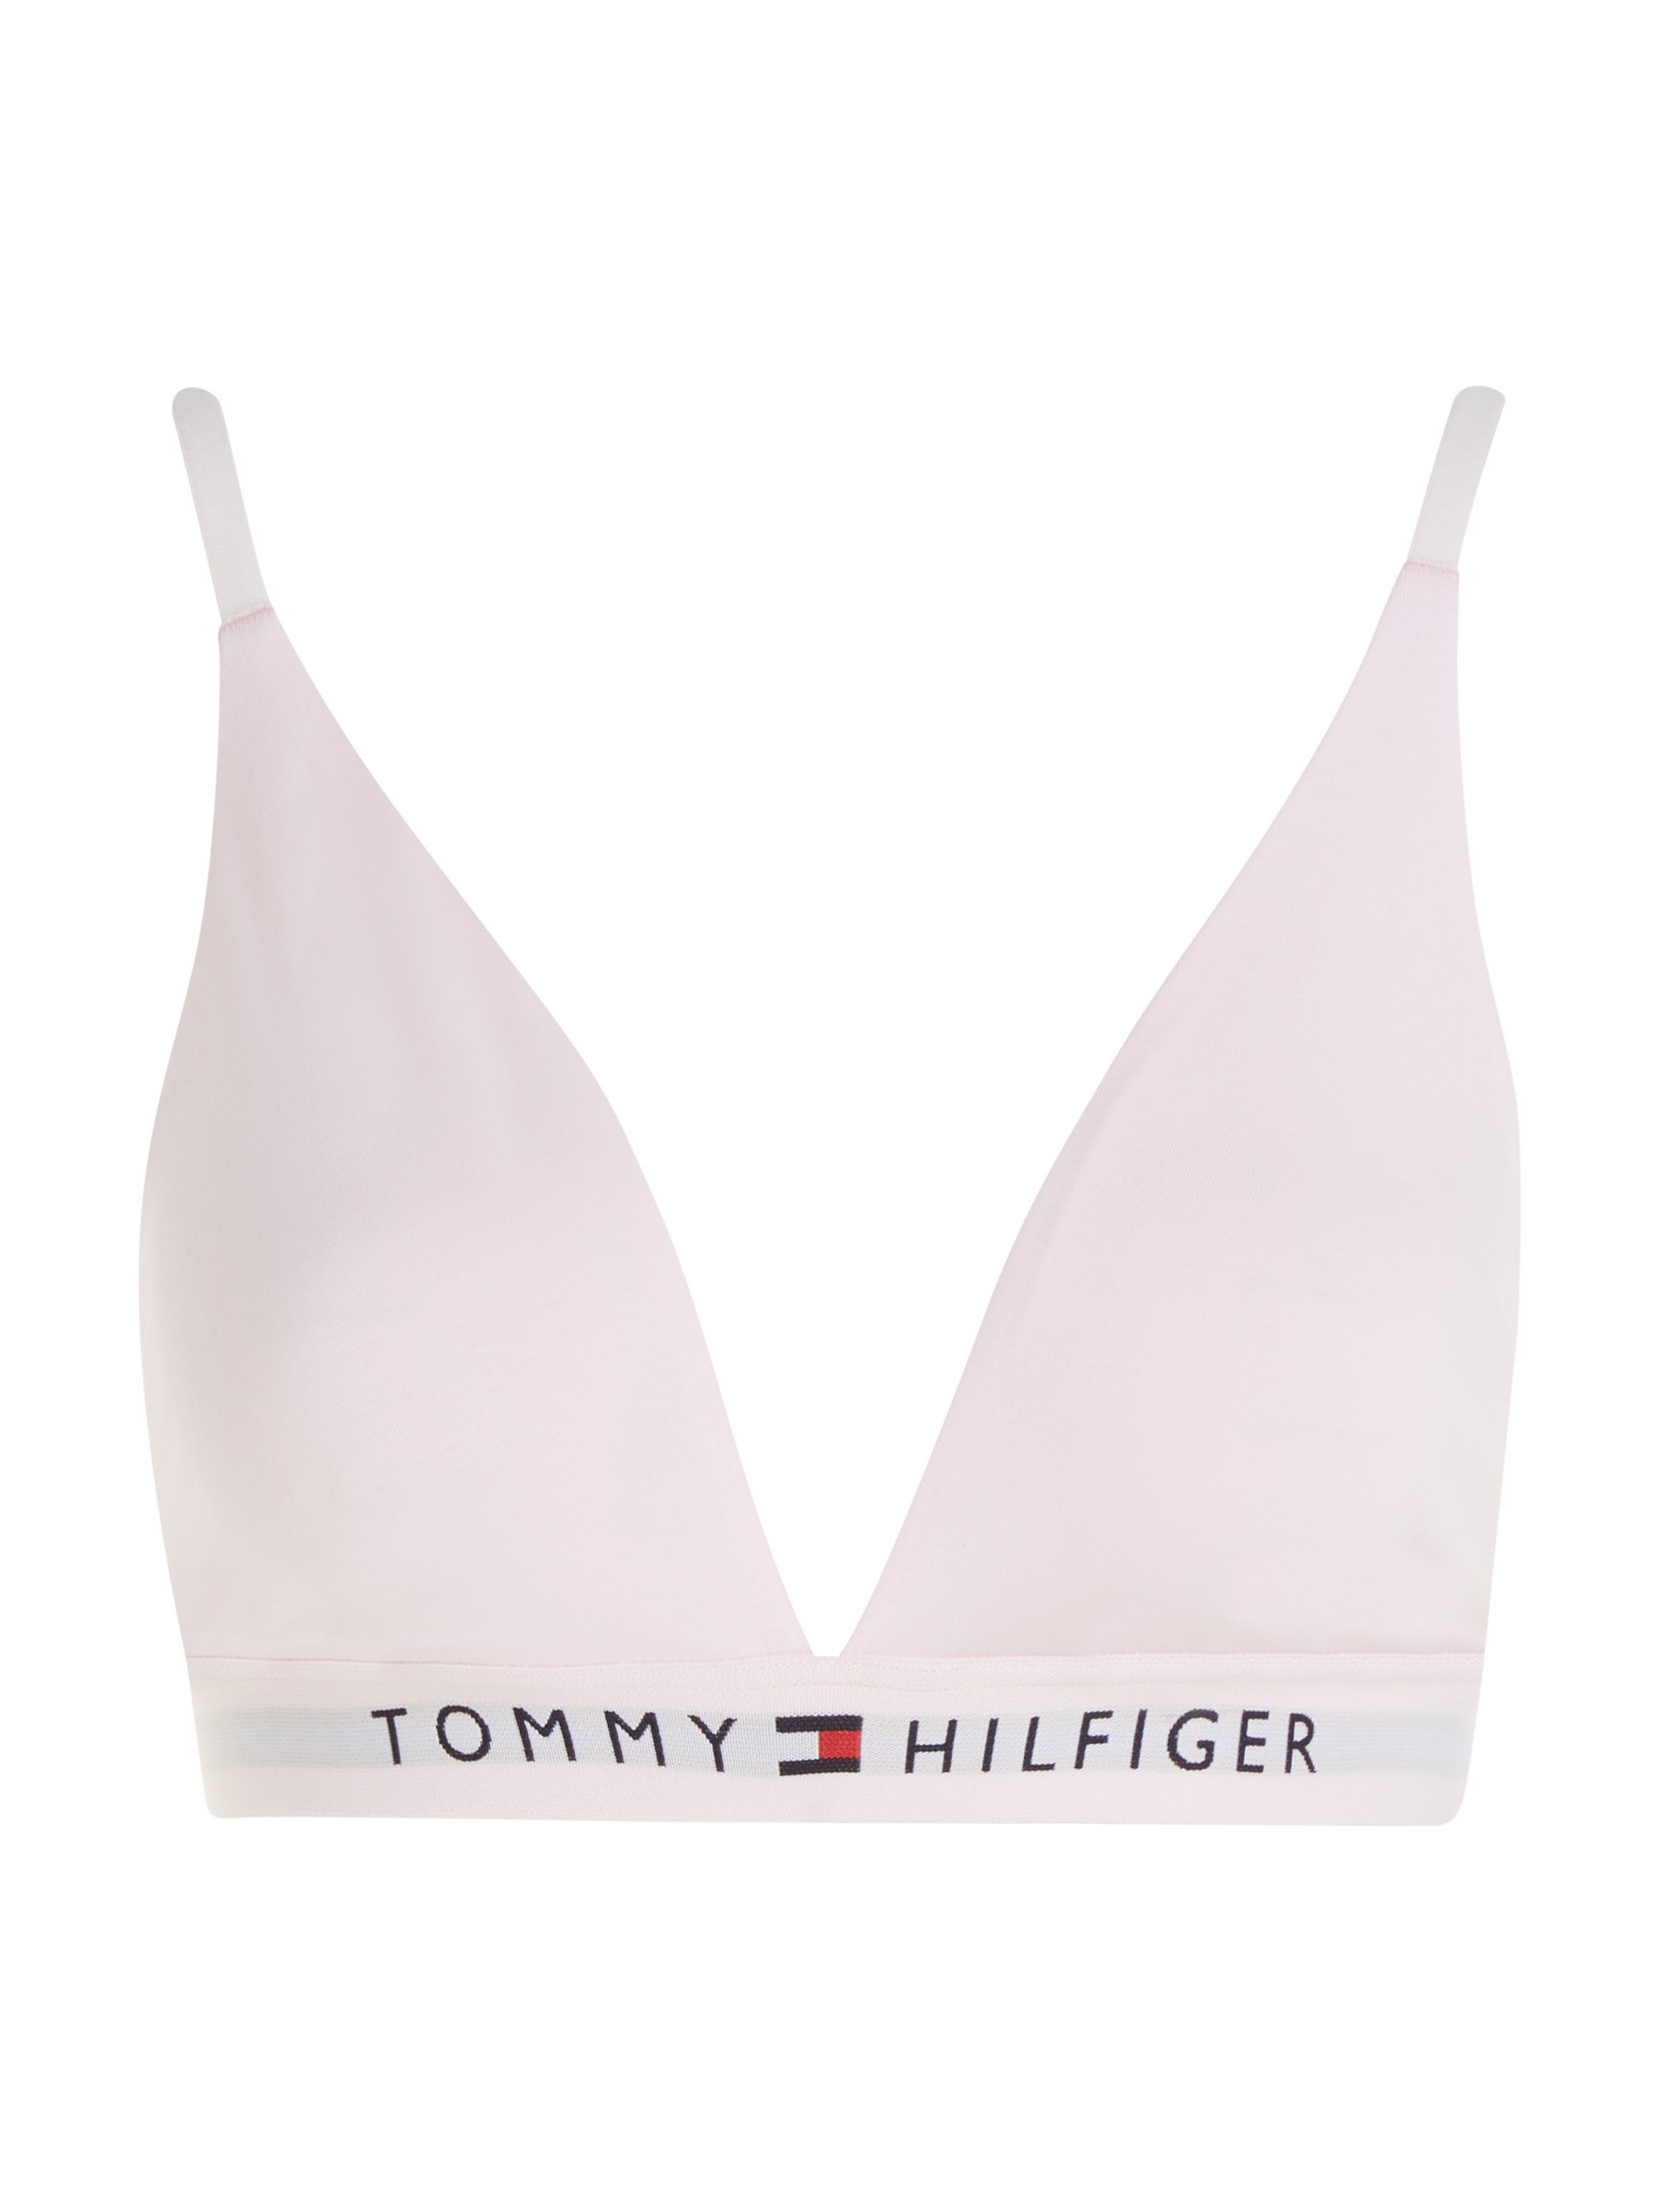 TRIANGLE Hilfiger Hilfiger UNLINED Light-Pink Underwear Tommy Markenlabel Bralette-BH Tommy mit